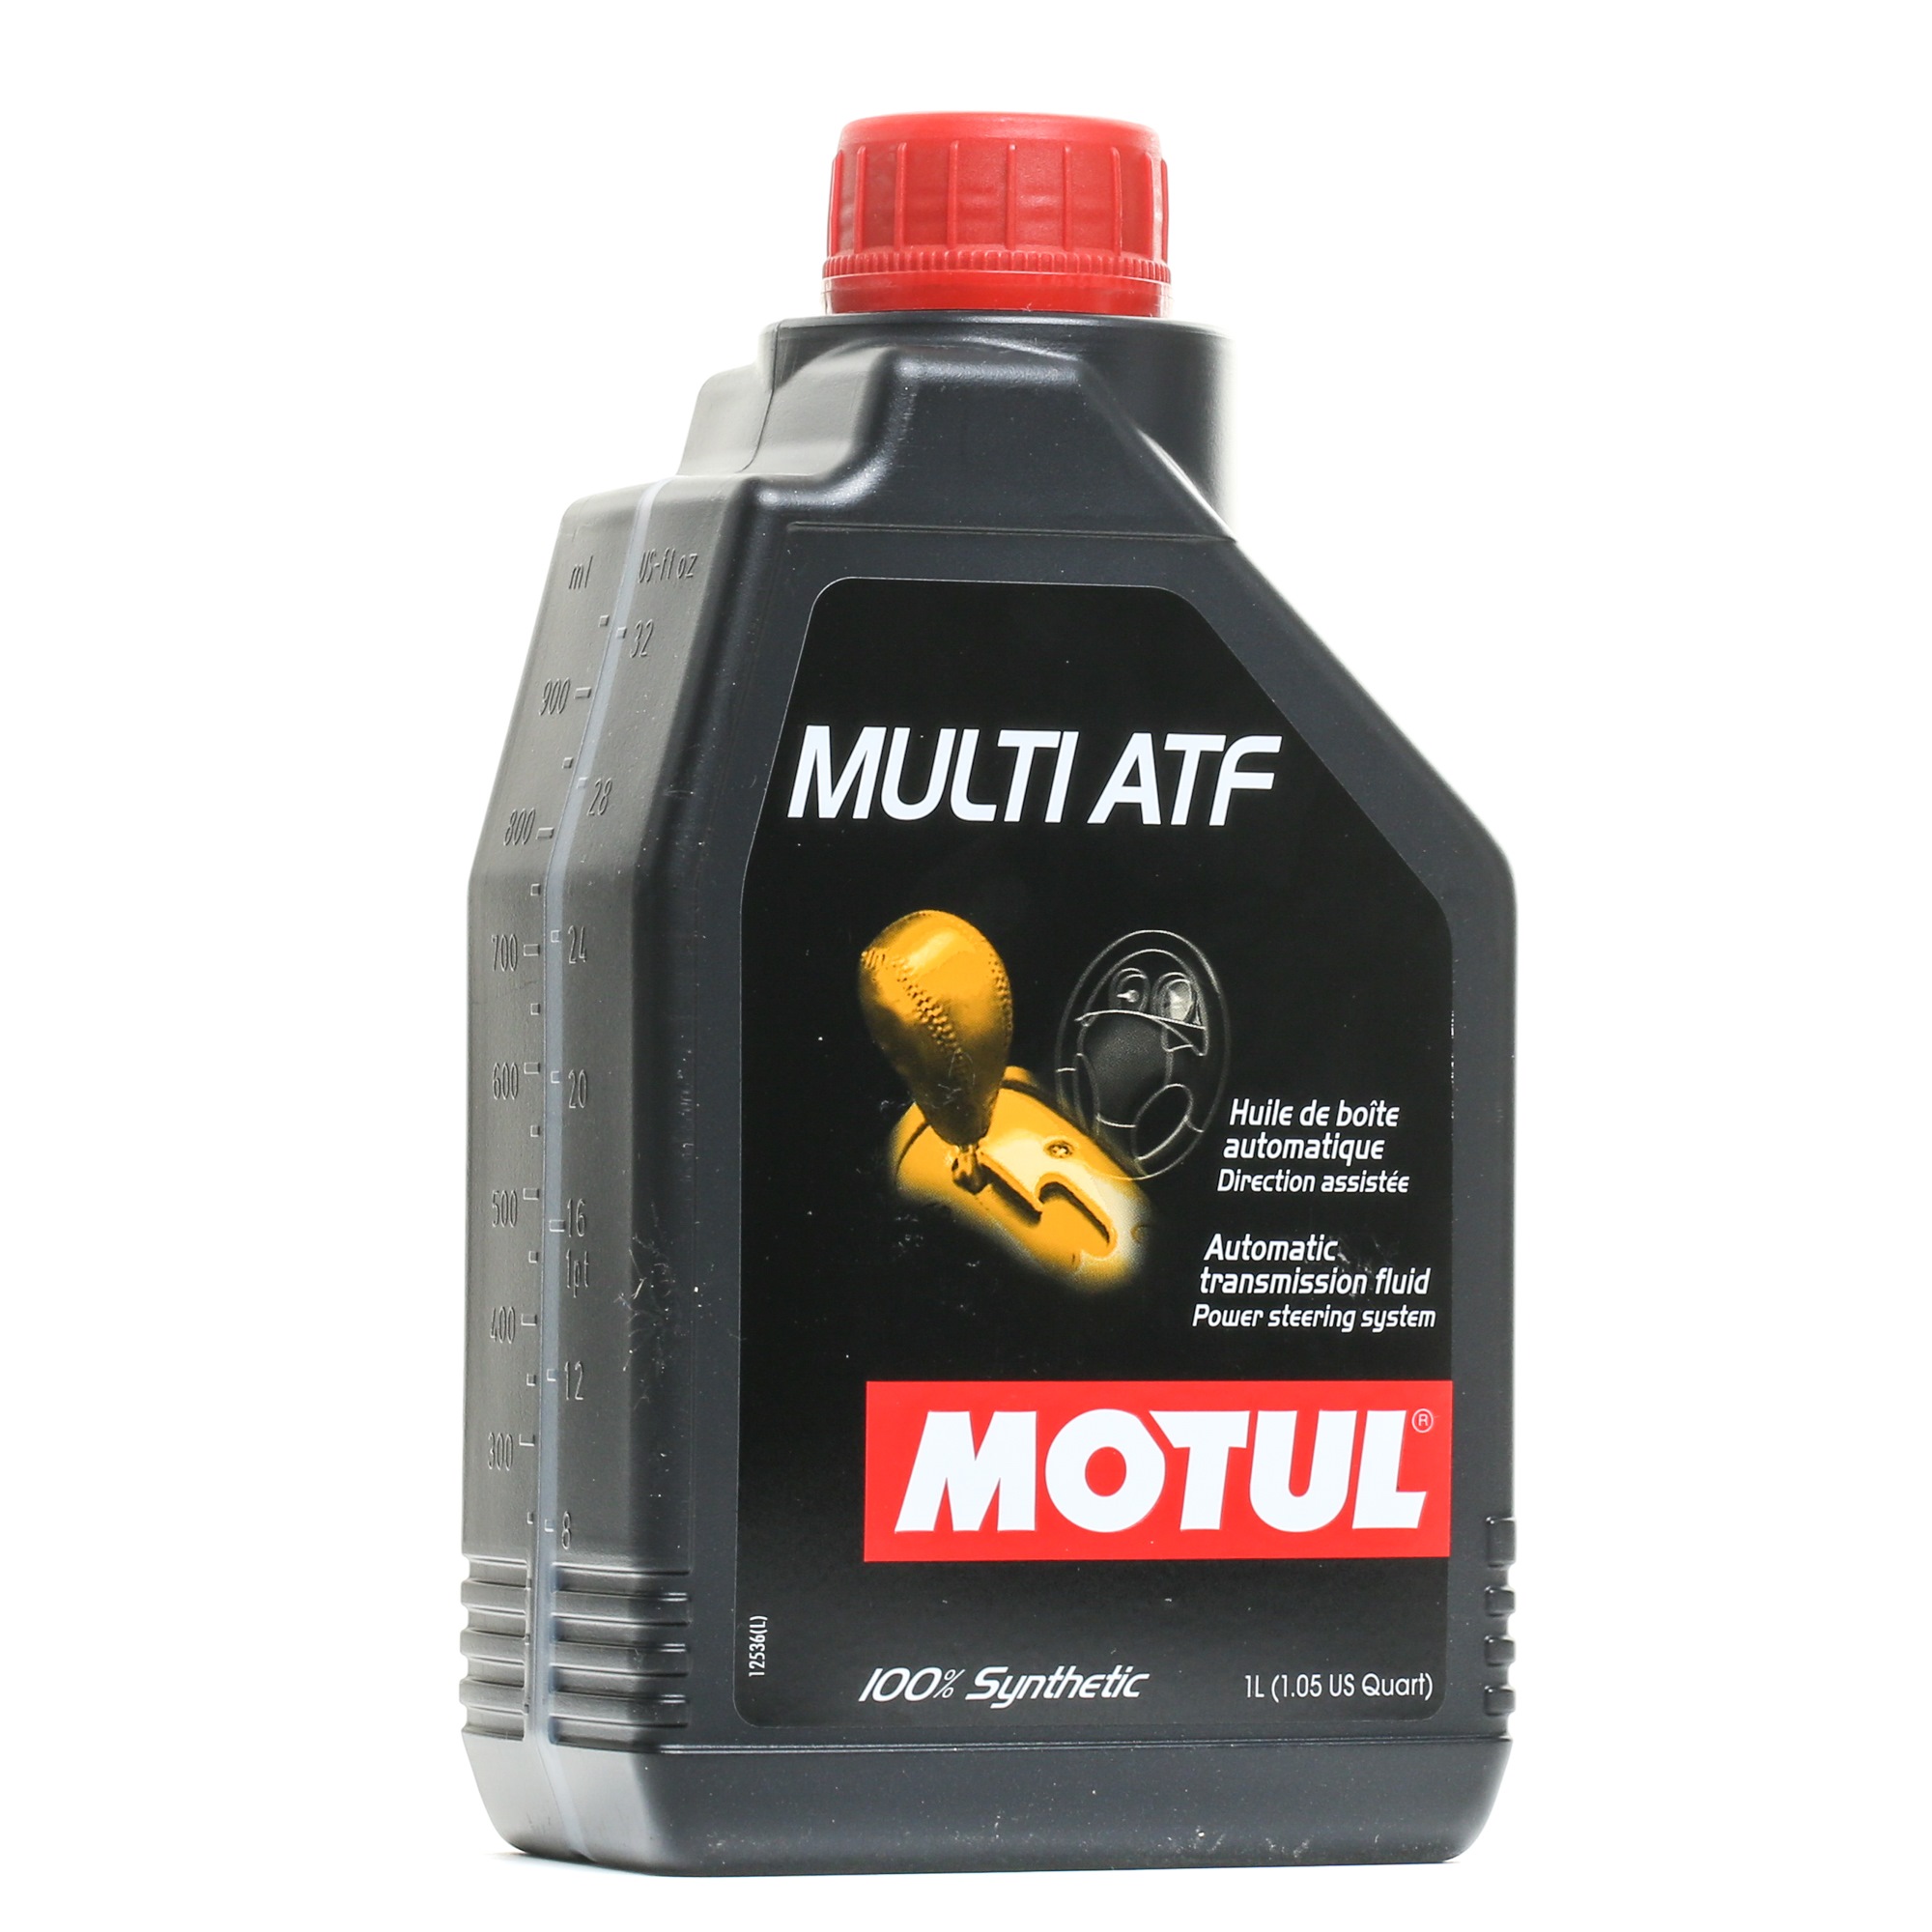 MULTIATF MOTUL MULTI ATF ATF III, 1l, Rot Automatikgetriebeöl 105784 günstig kaufen